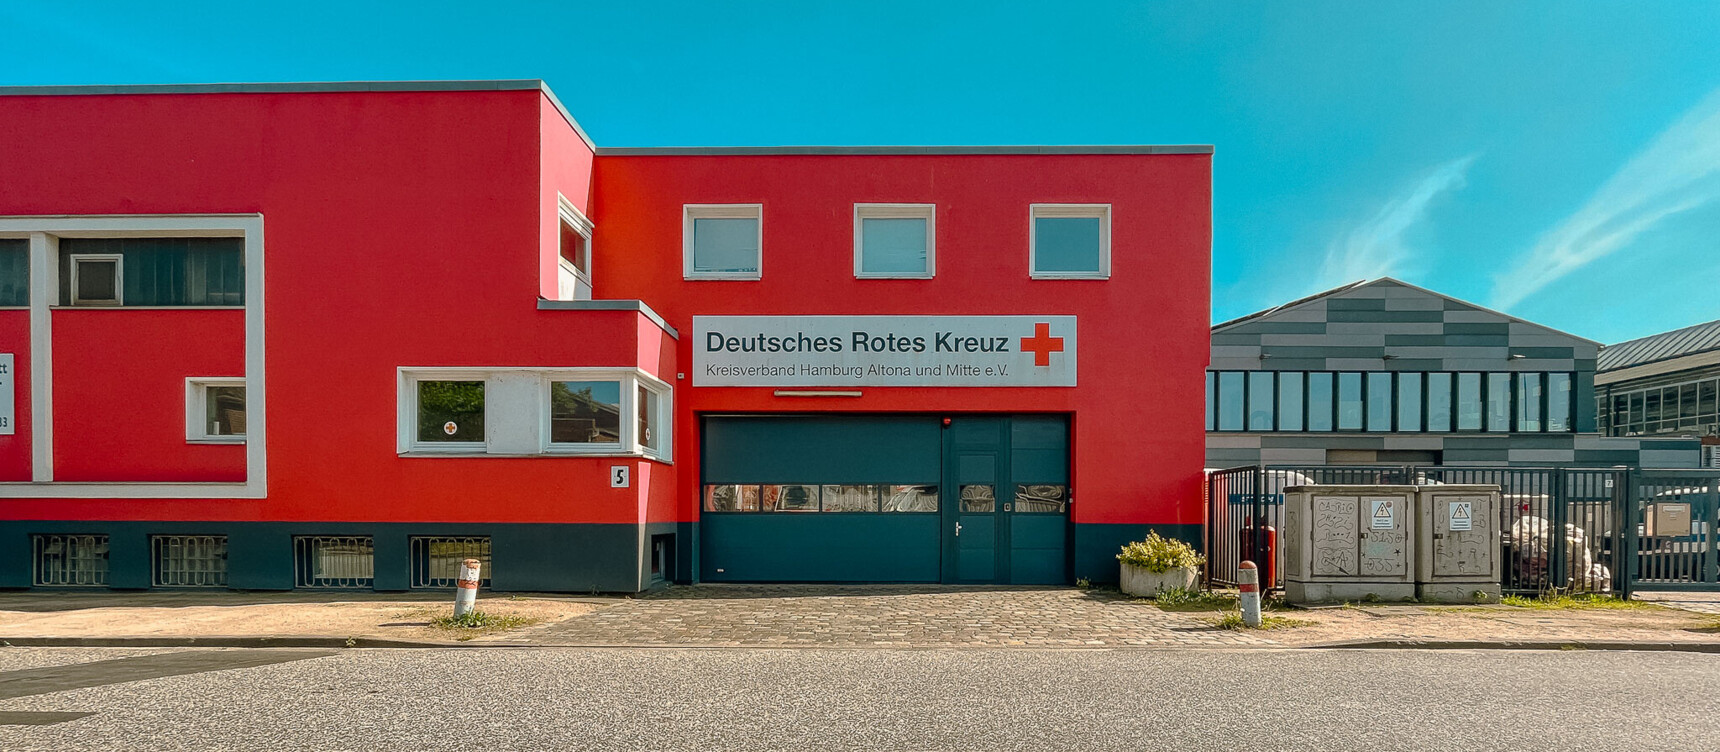 Deutsches Rotes Kreuz in Altona: Impressionen aus dem Gewerbegebiet Gewerbegebiet Bornkampsweg/Ruhrstraße